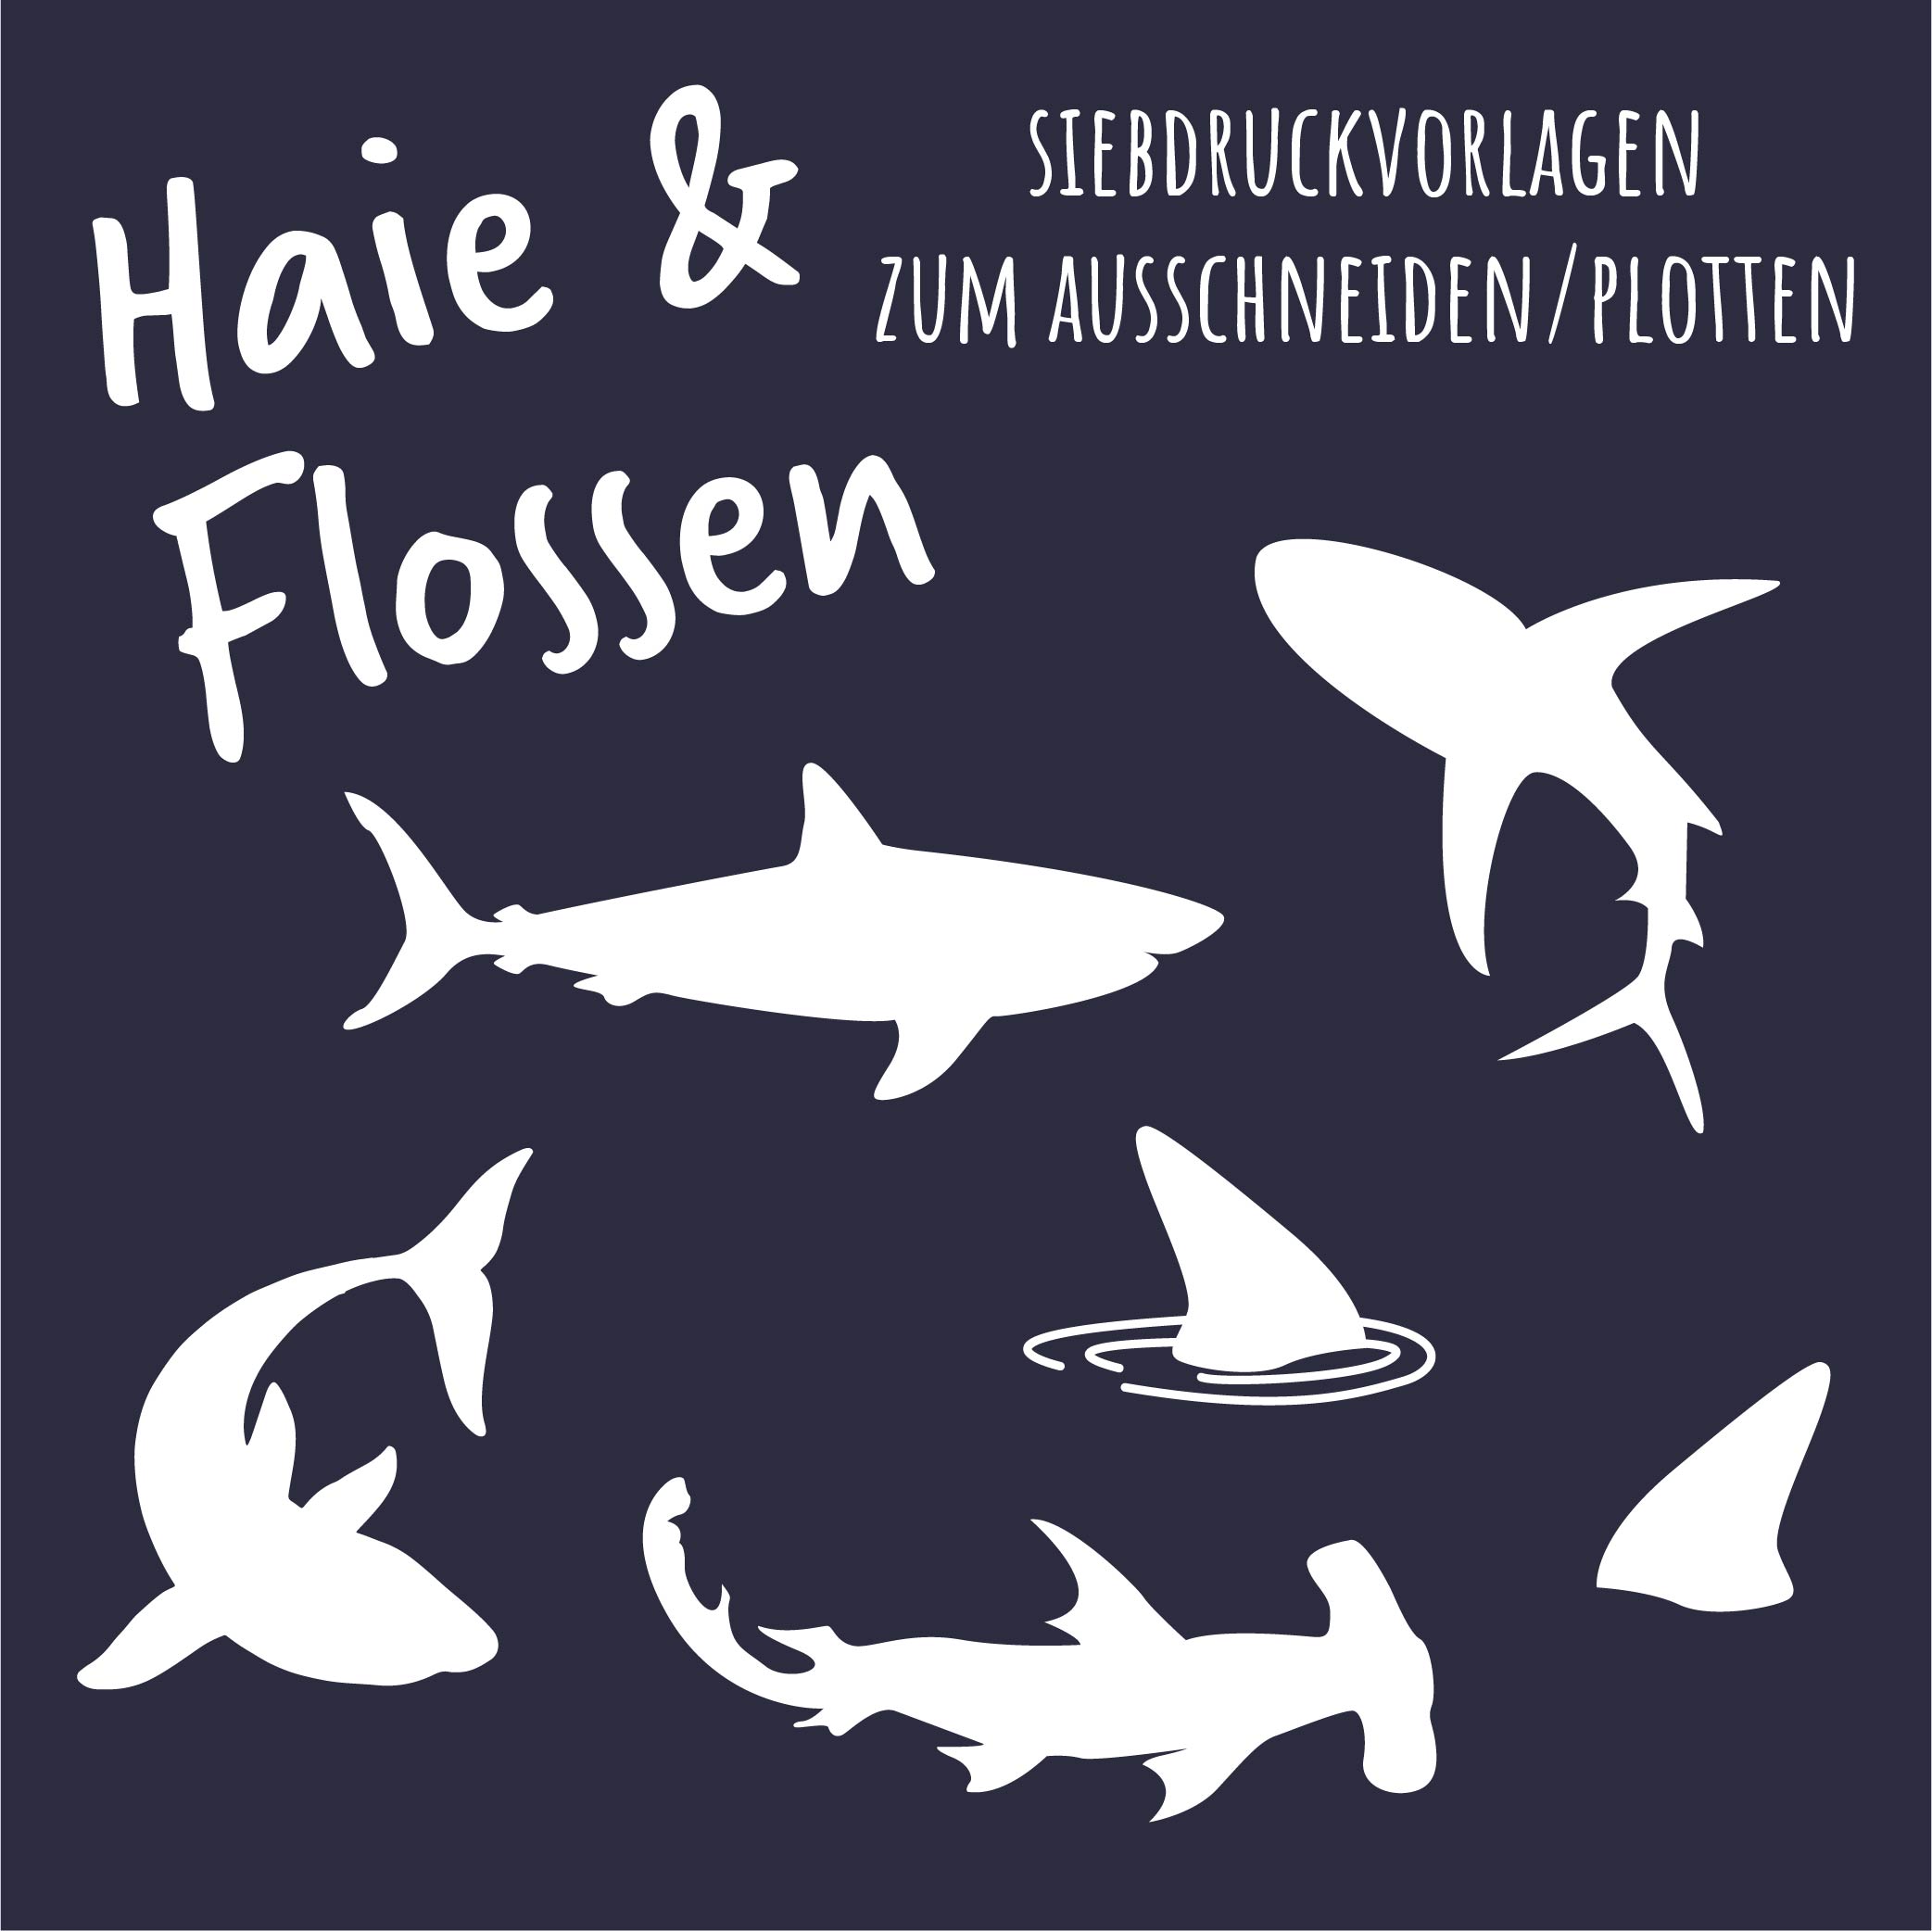 FREEBIE - Haie & Flossen - Siebdruck Vorlagen